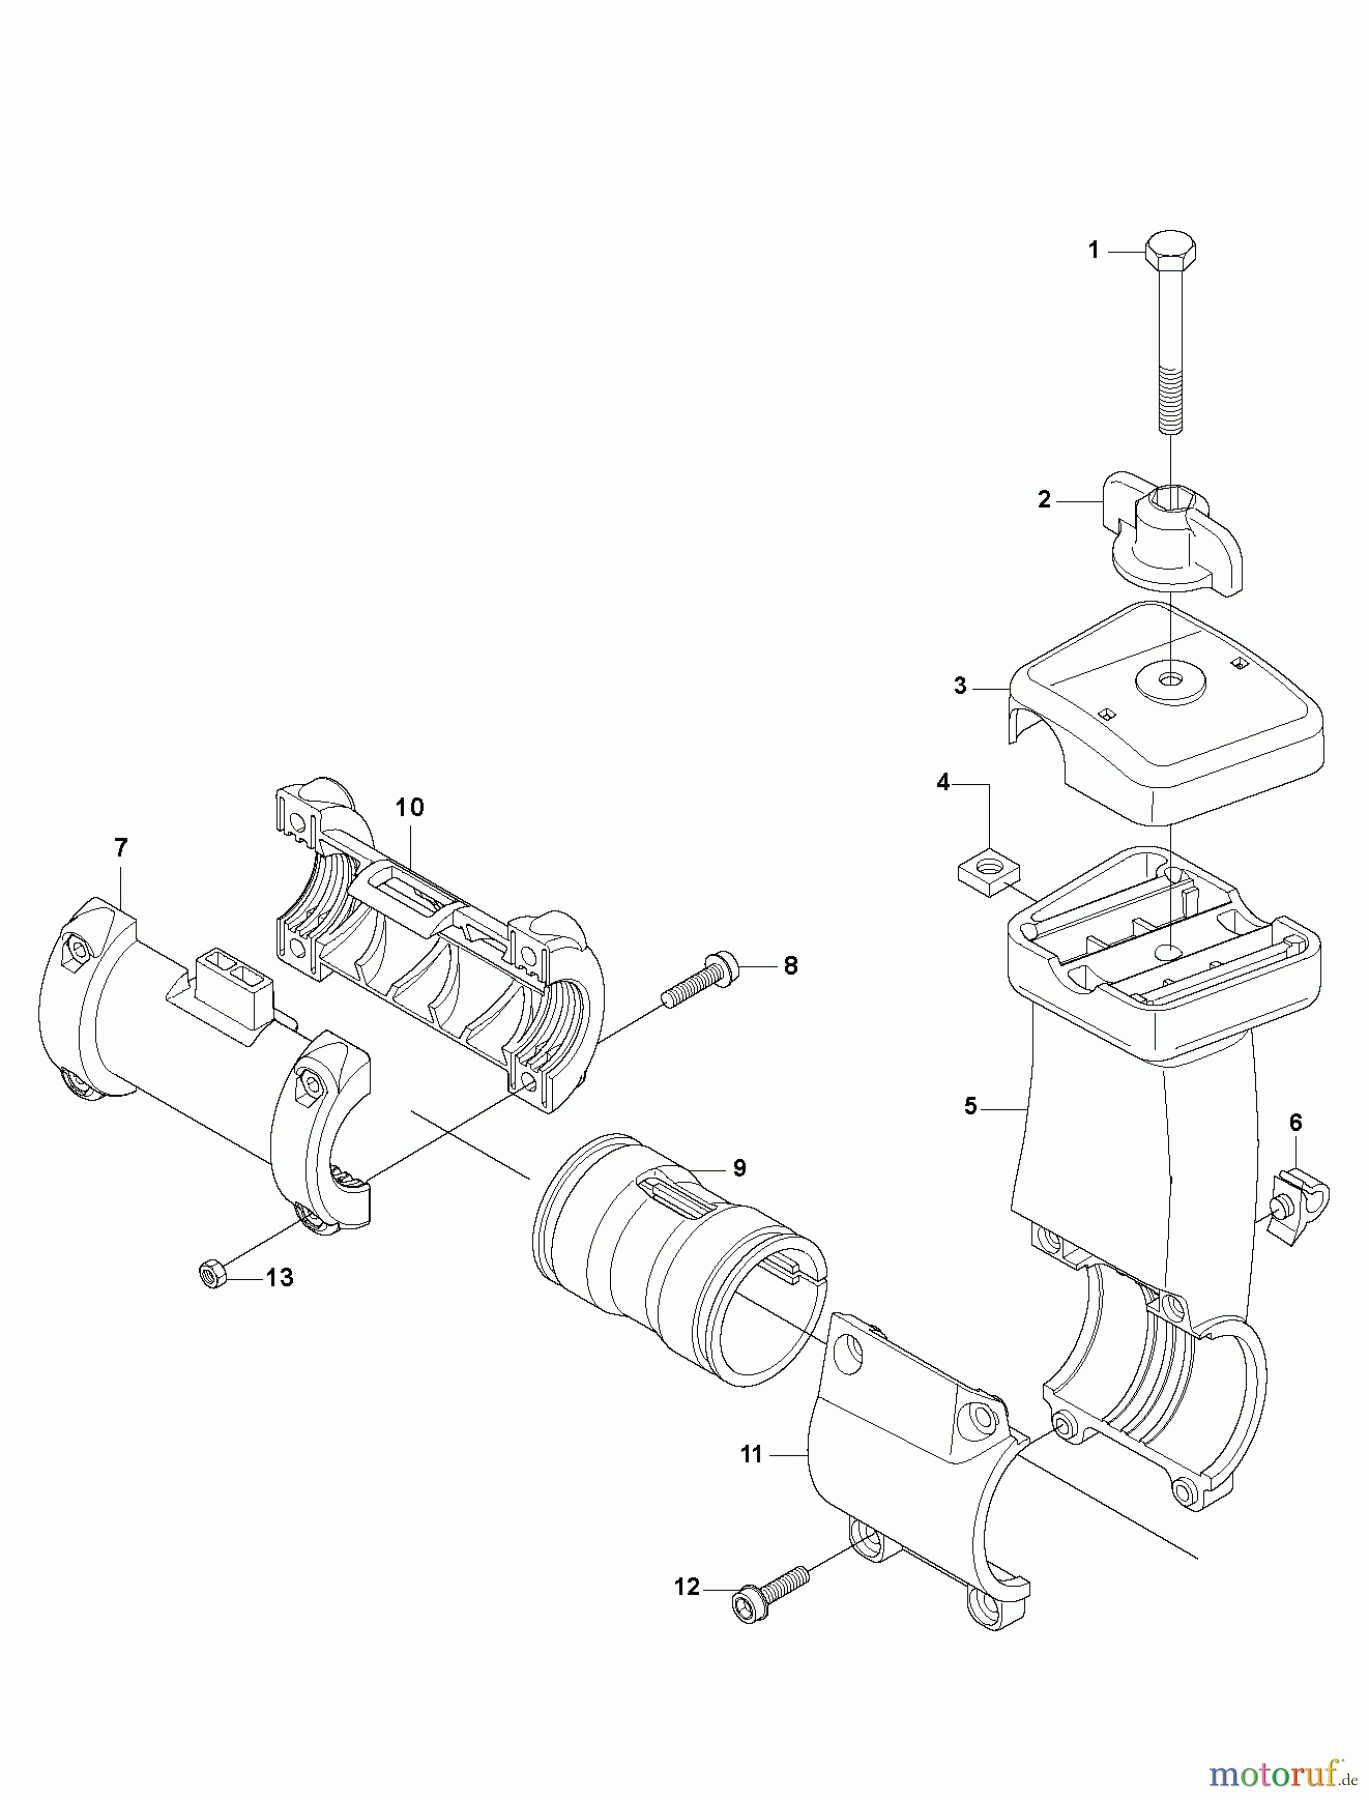  Jonsered Motorsensen, Trimmer CC2236 - Jonsered String/Brush Trimmer (2010-11) TOWER